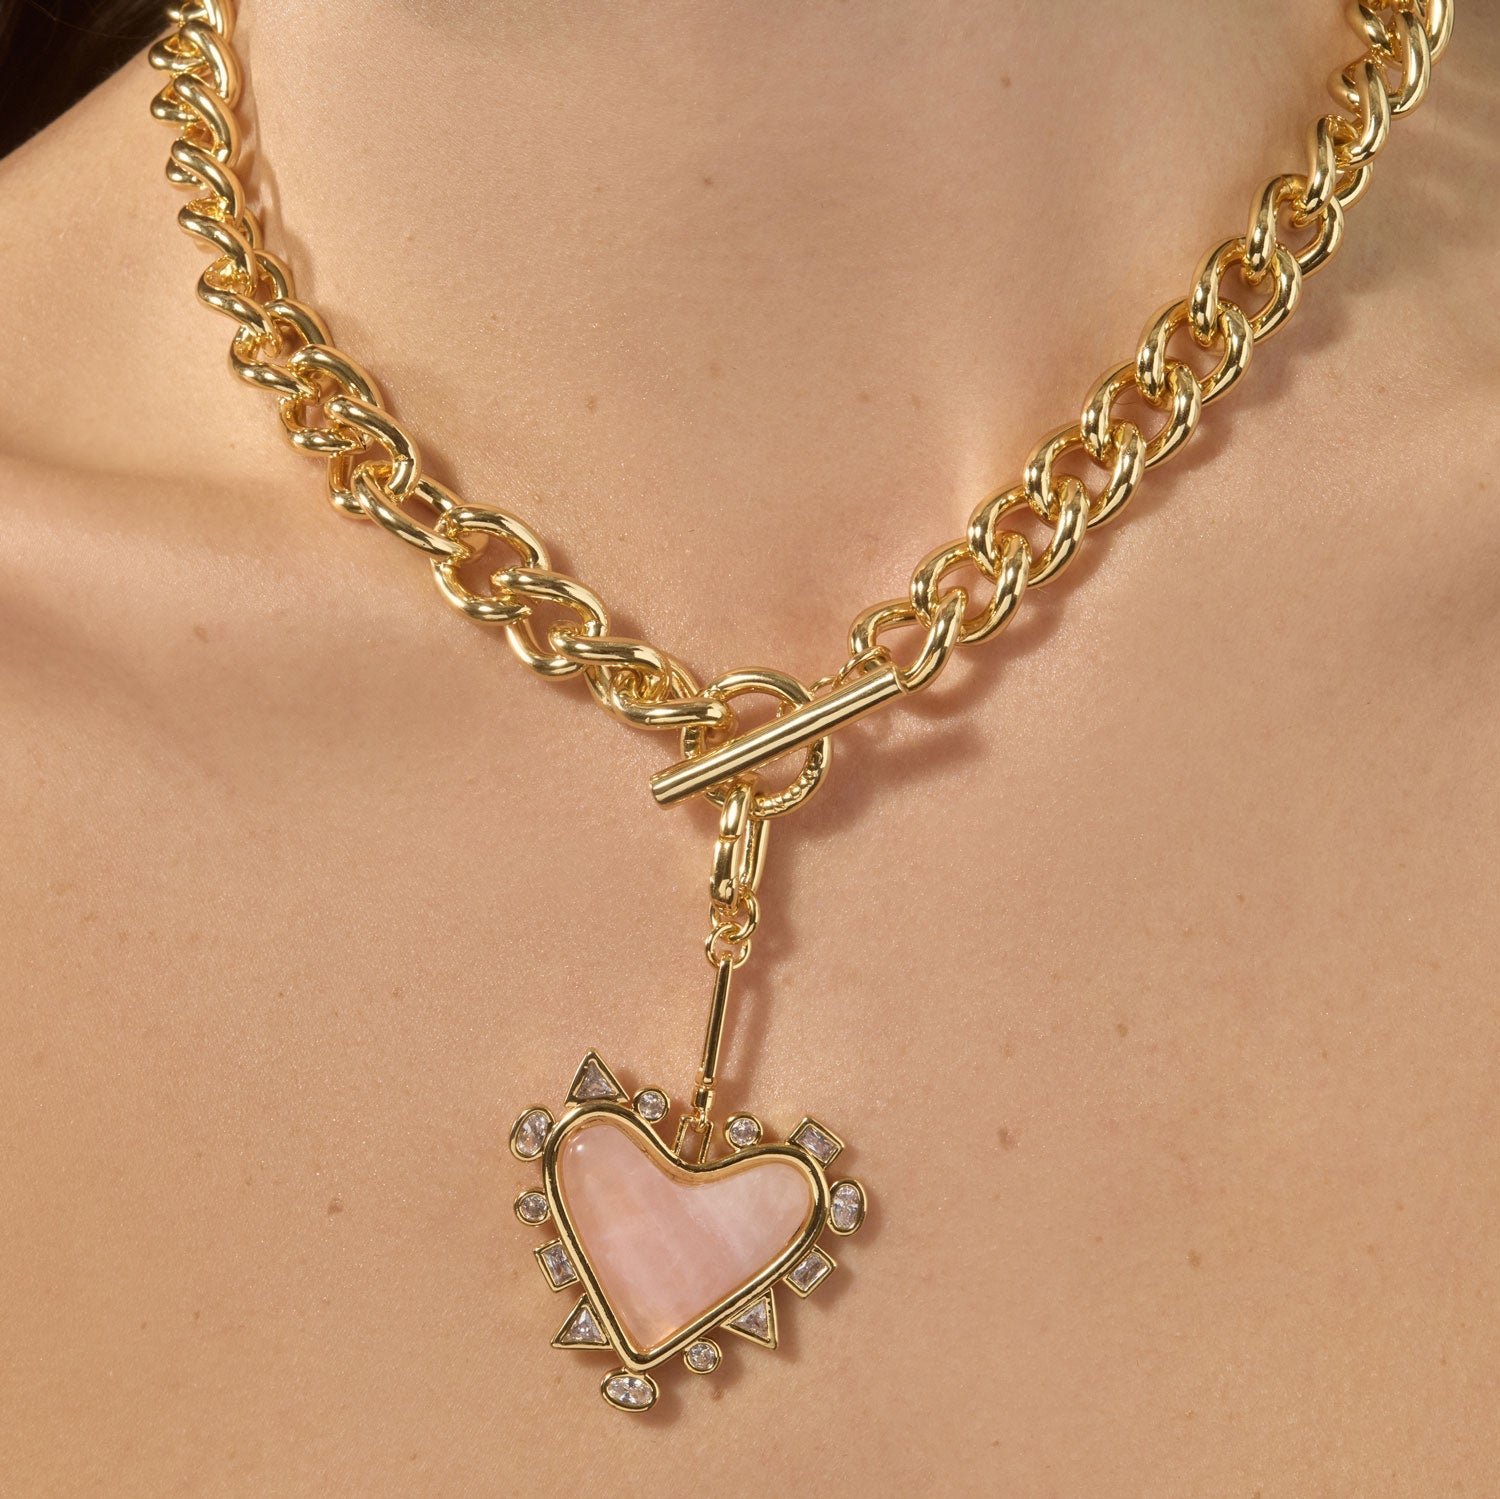 Cordelia Charm Necklace by Mignonne Gavigan